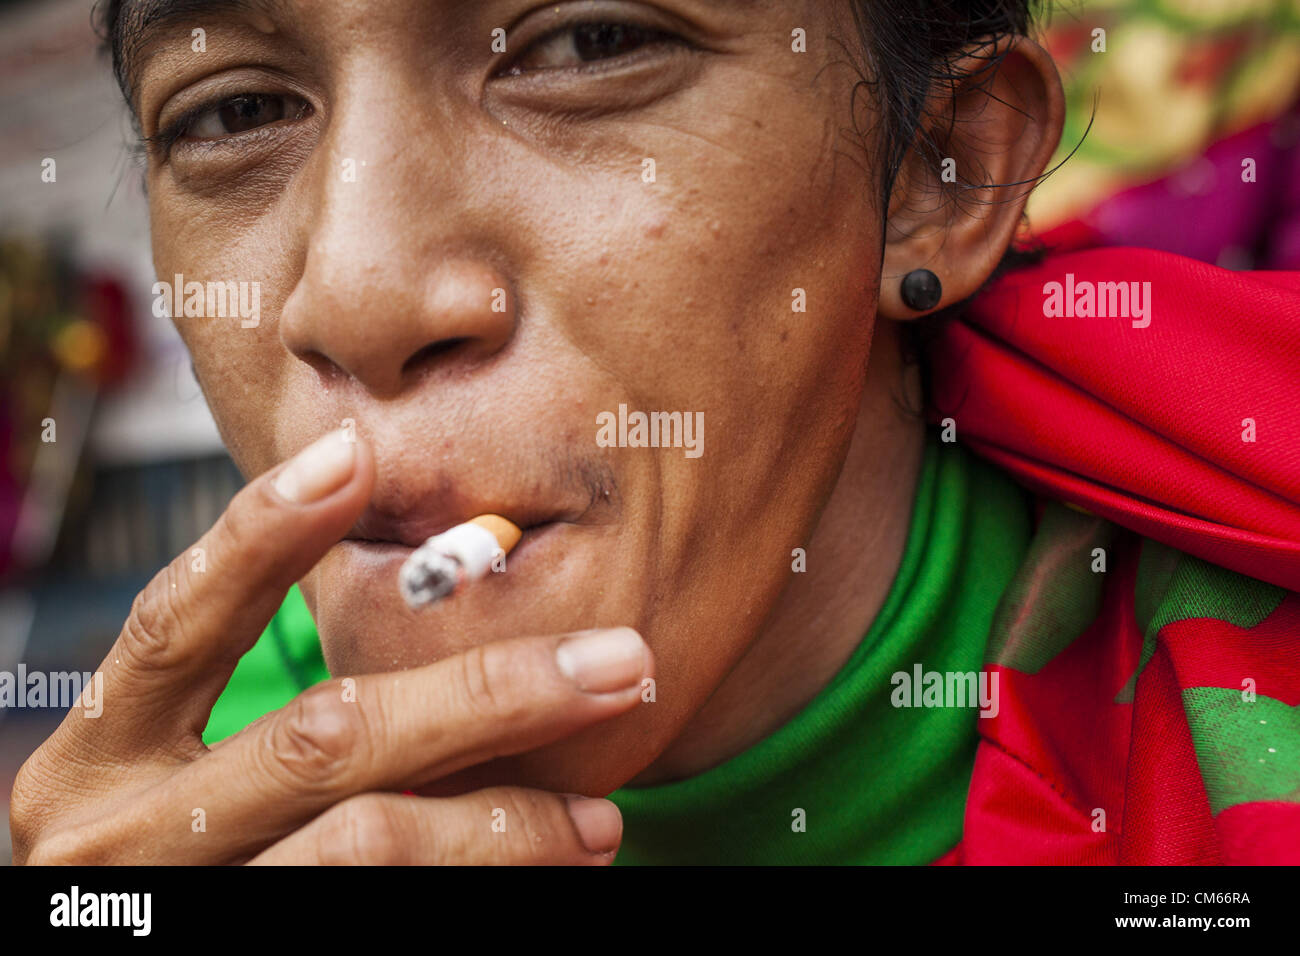 14 octobre 2012 - Bangkok, Thaïlande - Un homme fume une cigarette dans une rue de Bangkok, Thaïlande. La Thaïlande et les Philippines sont impliqués dans un différend au sujet de taxes sur les cigarettes. Les responsables du commerce des Philippines allèguent que la Thaïlande une accusation injuste taxe sur les importations de cigarettes des Philippines. Les responsables thaïlandais ont répondu qu'ils ont pris la question en délibéré. Les représentants des Philippines ont déclaré qu'ils peuvent prendre la question à l'Organisation mondiale du commerce si la Thaïlande ne répond pas par le 15 octobre. (Crédit Image : © Jack Kurtz/ZUMAPRESS.com) Banque D'Images